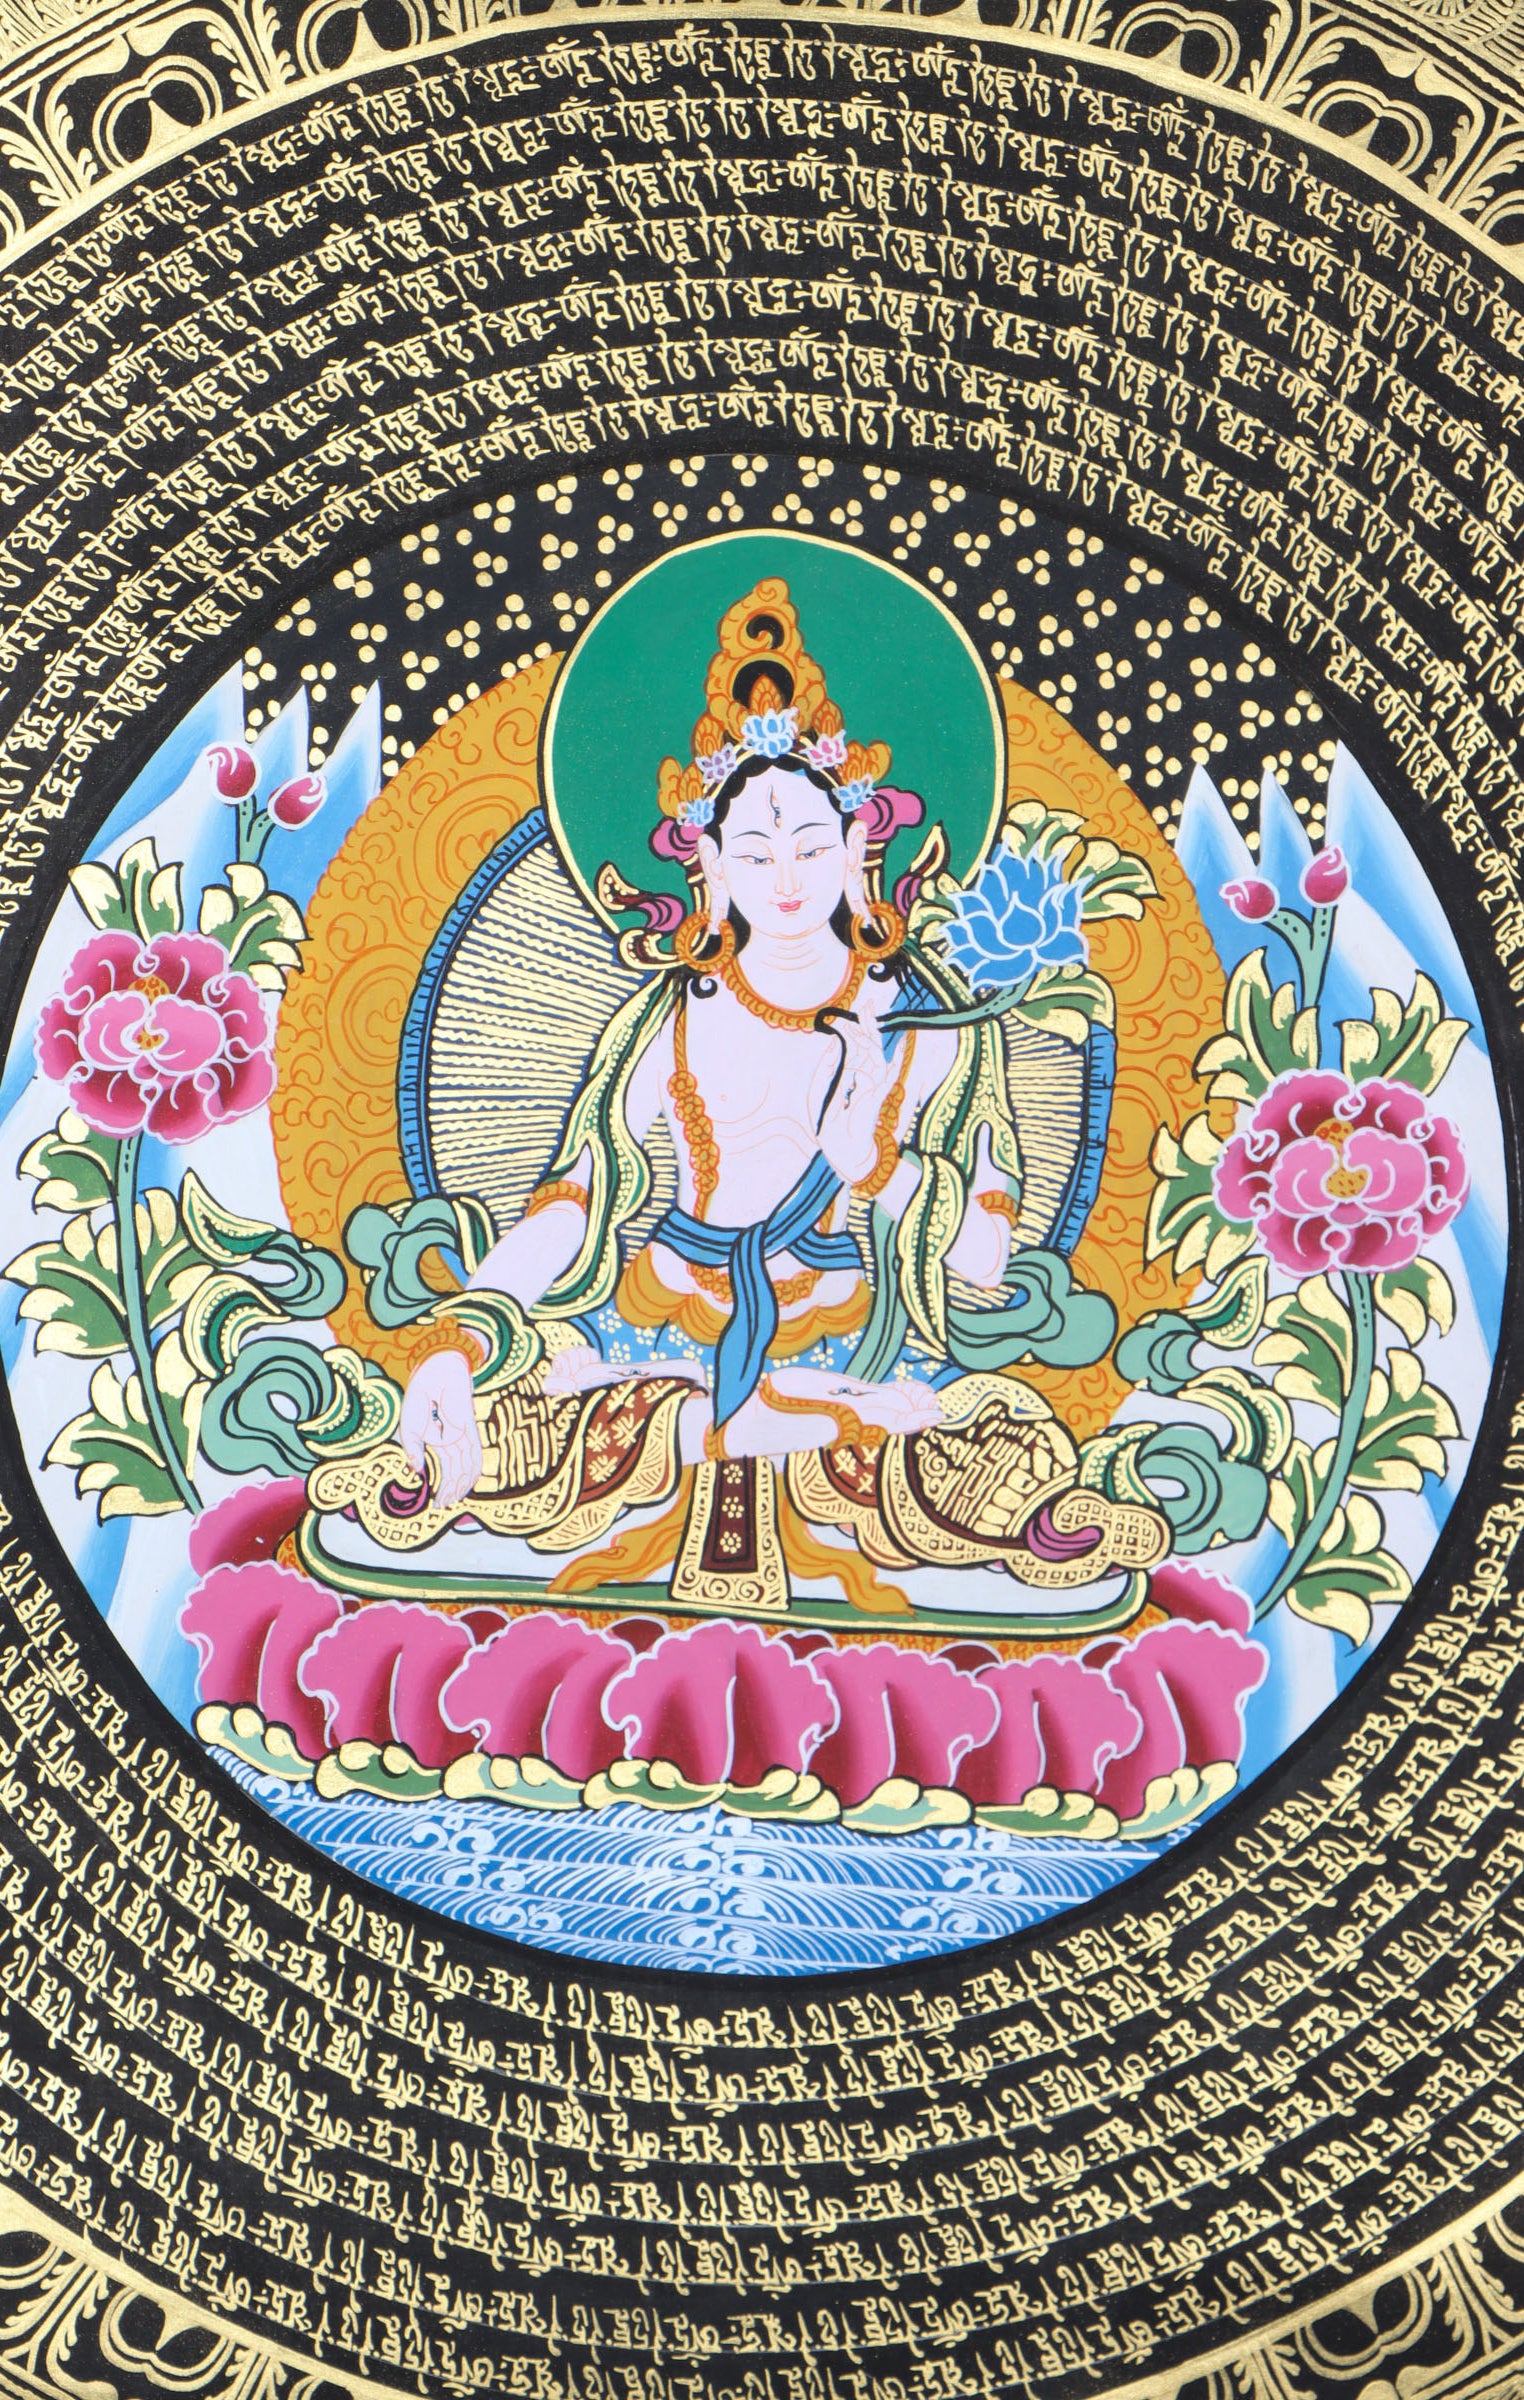 White Tara Mandala Thangka for spirituality 